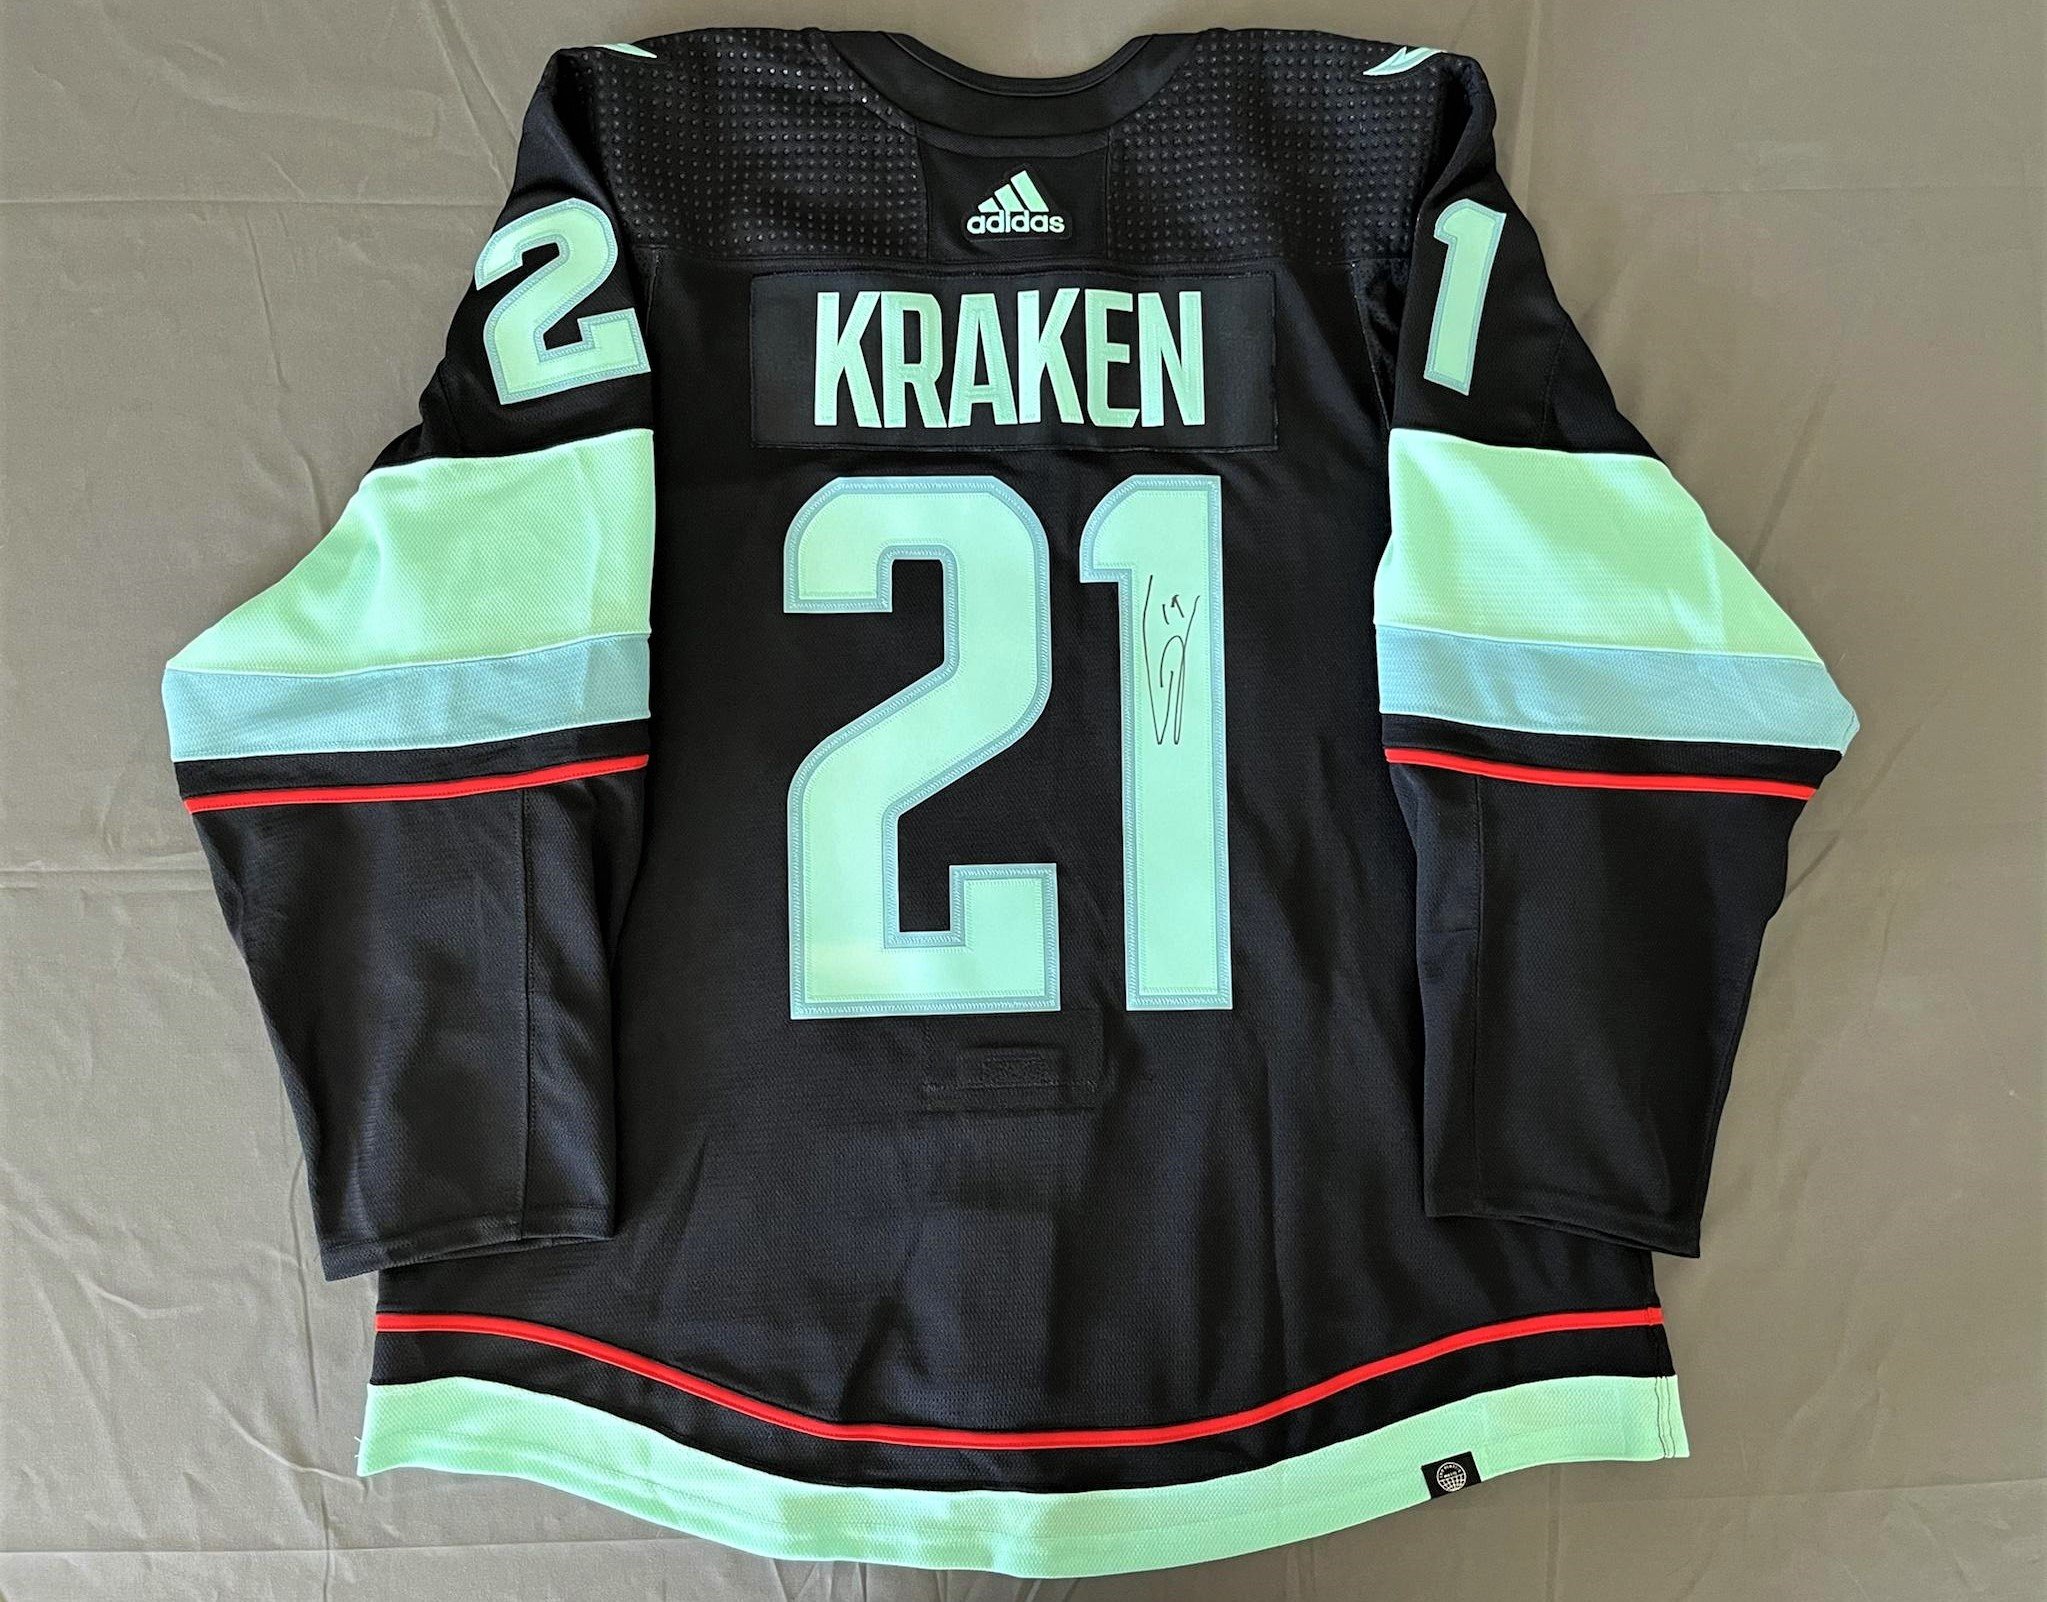 Kraken wear last of six 'Hockey is for Everyone' warmup jersey